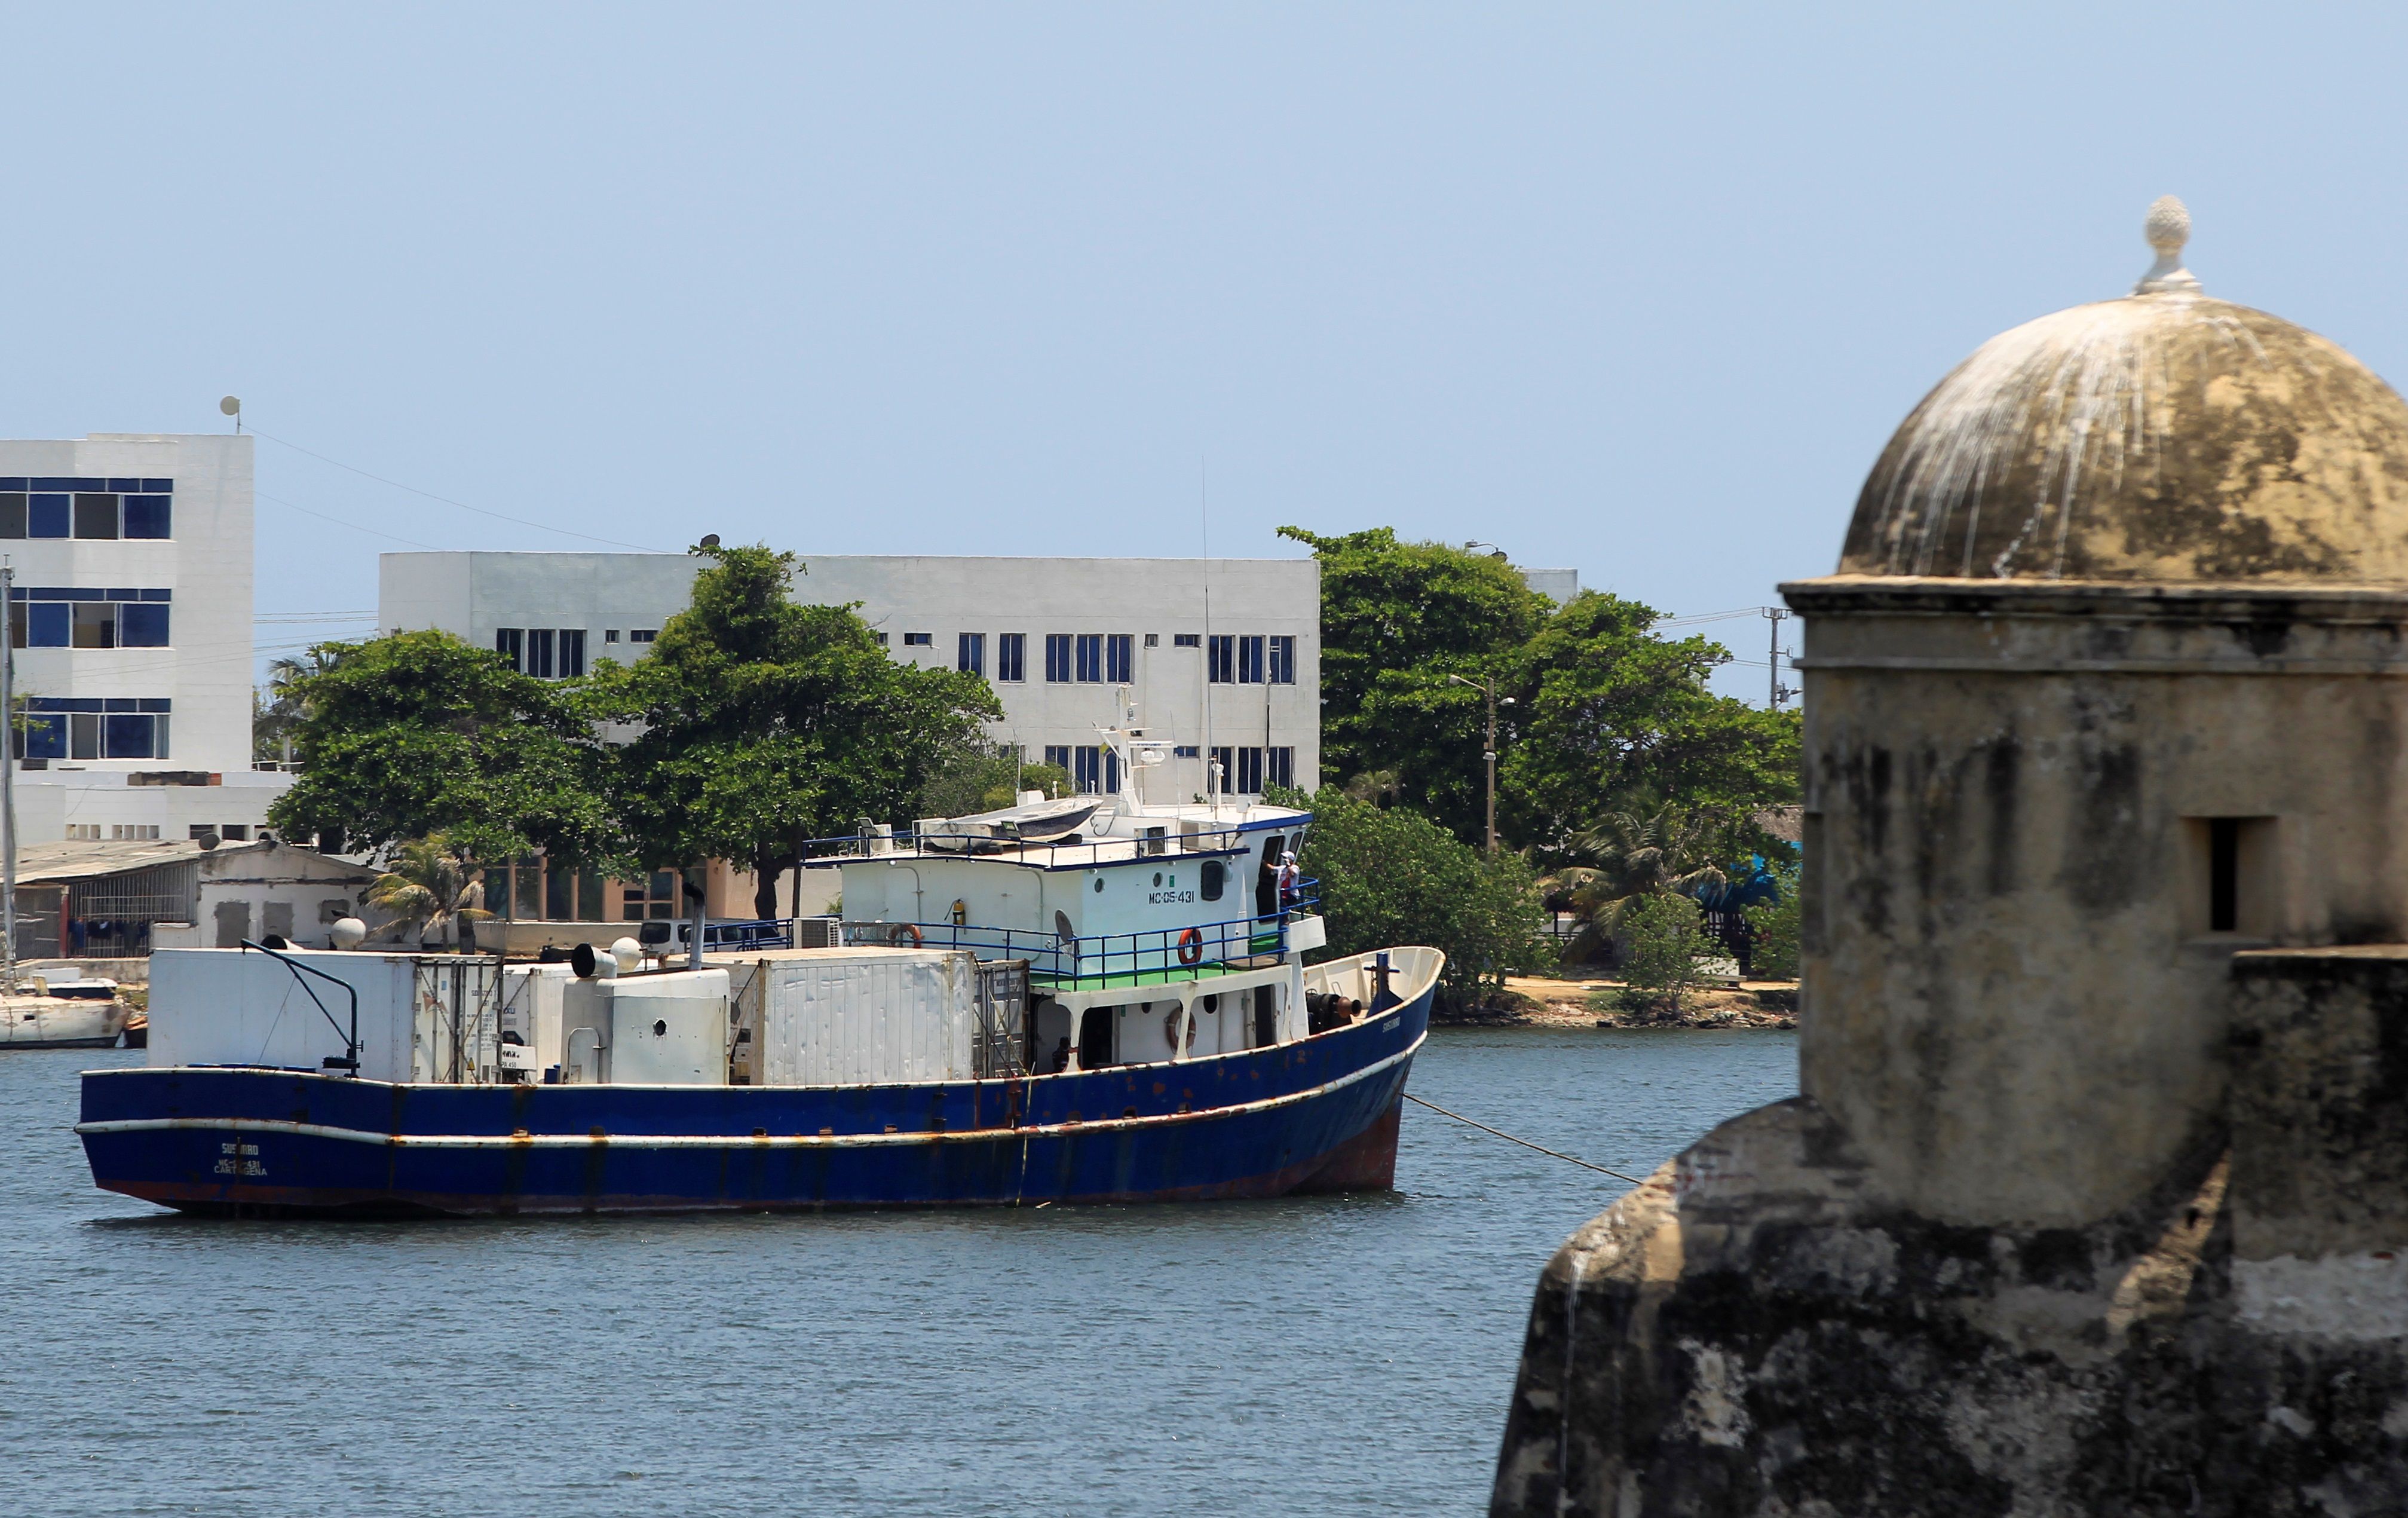 Fotografía del carguero colombiano "Susurro", que pasa una cuarentena fondeado en la bahía de las Ánimas, el 23 de mayo de 2020, frente de la ciudad amurallada de Cartagena de Indias (Colombia). EFE/Ricardo Maldonado Rozo 